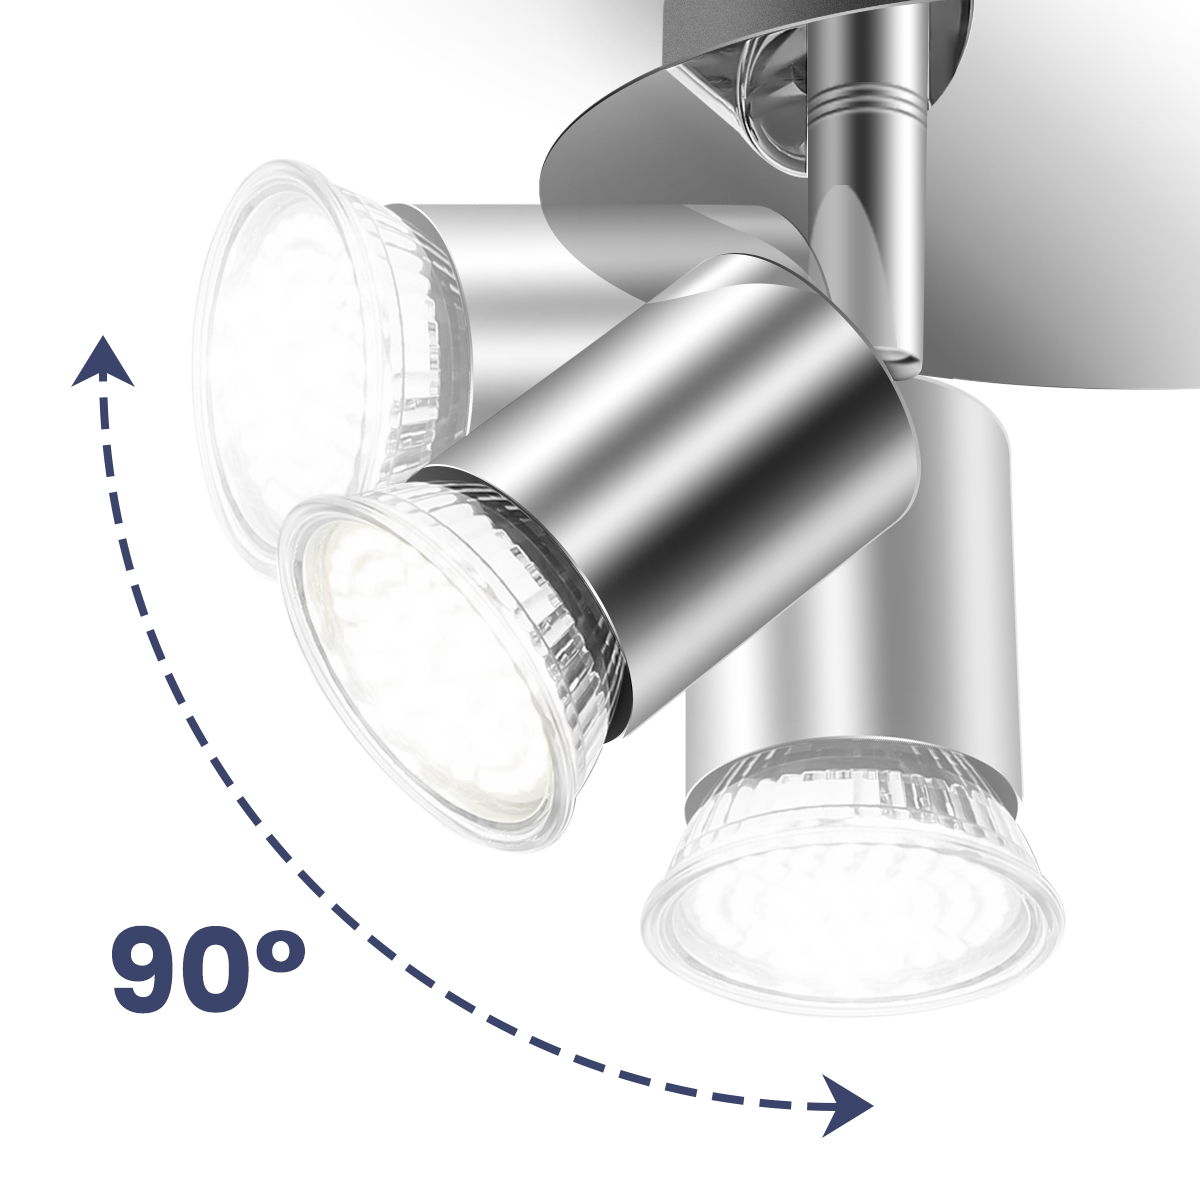 Elfeland-100-220V-4-Way-GU10-LED-Rotatable-Ceiling-Light-Lamp-Bulb-Spotlight-Fitting-Home-Lighting-1888430-5